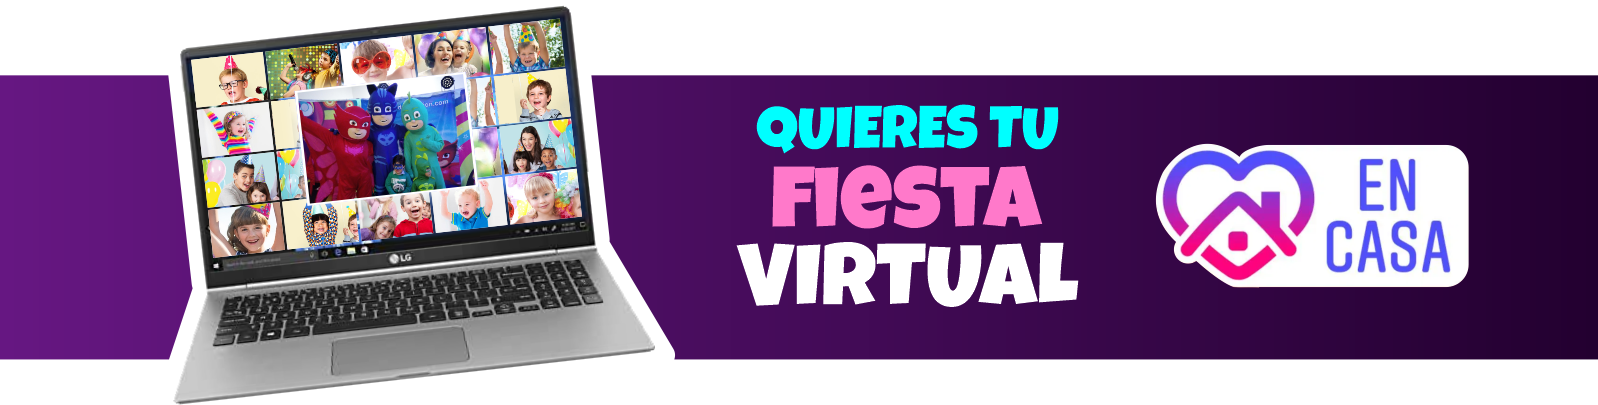 fiestas infantiles niños virtuales virtual online recreacionistas recreacion covid 19 miami estados unidos mexico argentina chile medellin Santa Marta Cartagena